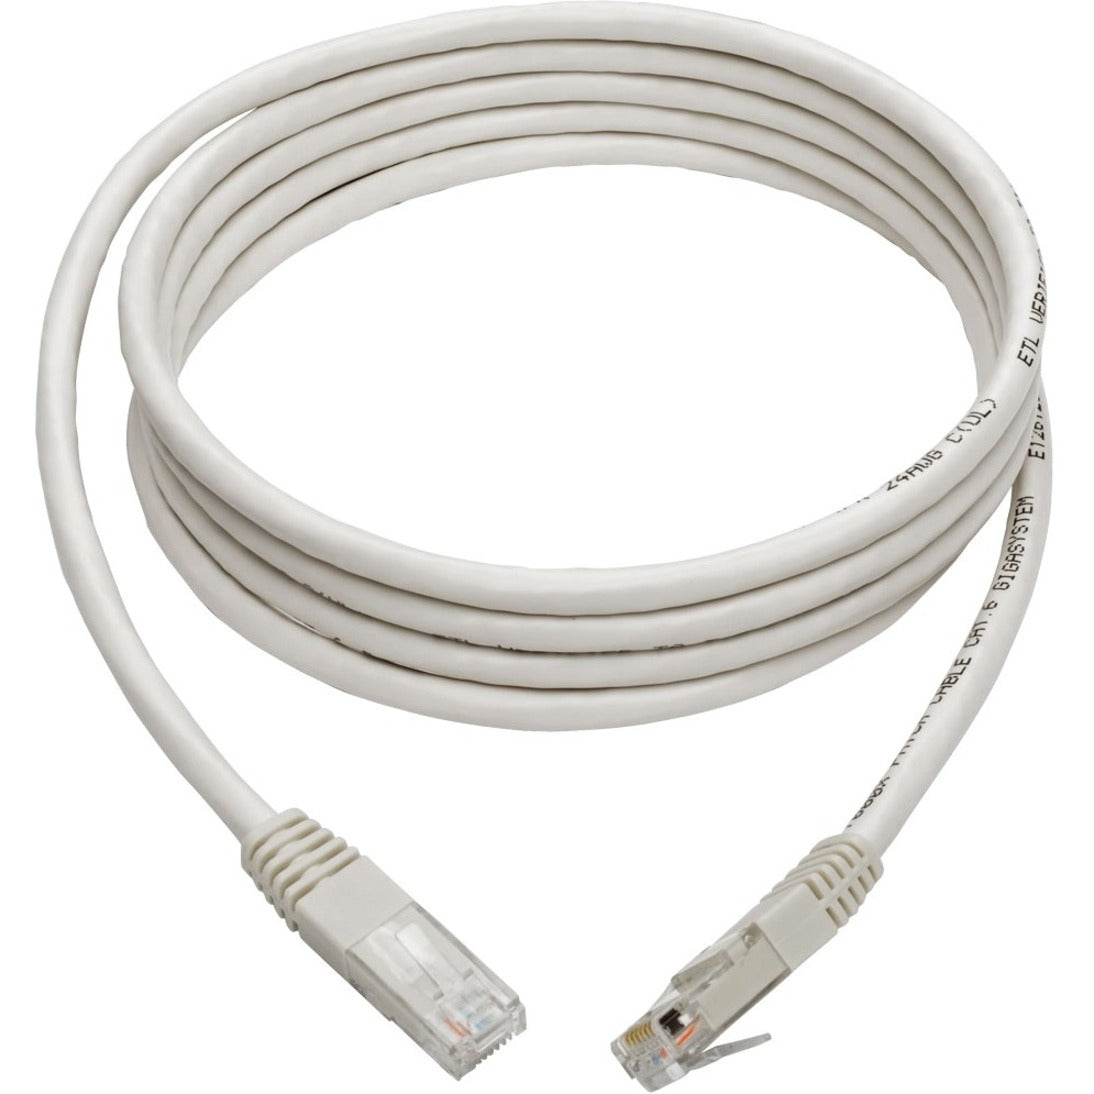 特黎普利特 N200-007-WH 六类千兆模压补丁电缆 （RJ45 M/M），白色，7英尺，拉力缓解，多股，模压 特黎普利特 特黎普利特